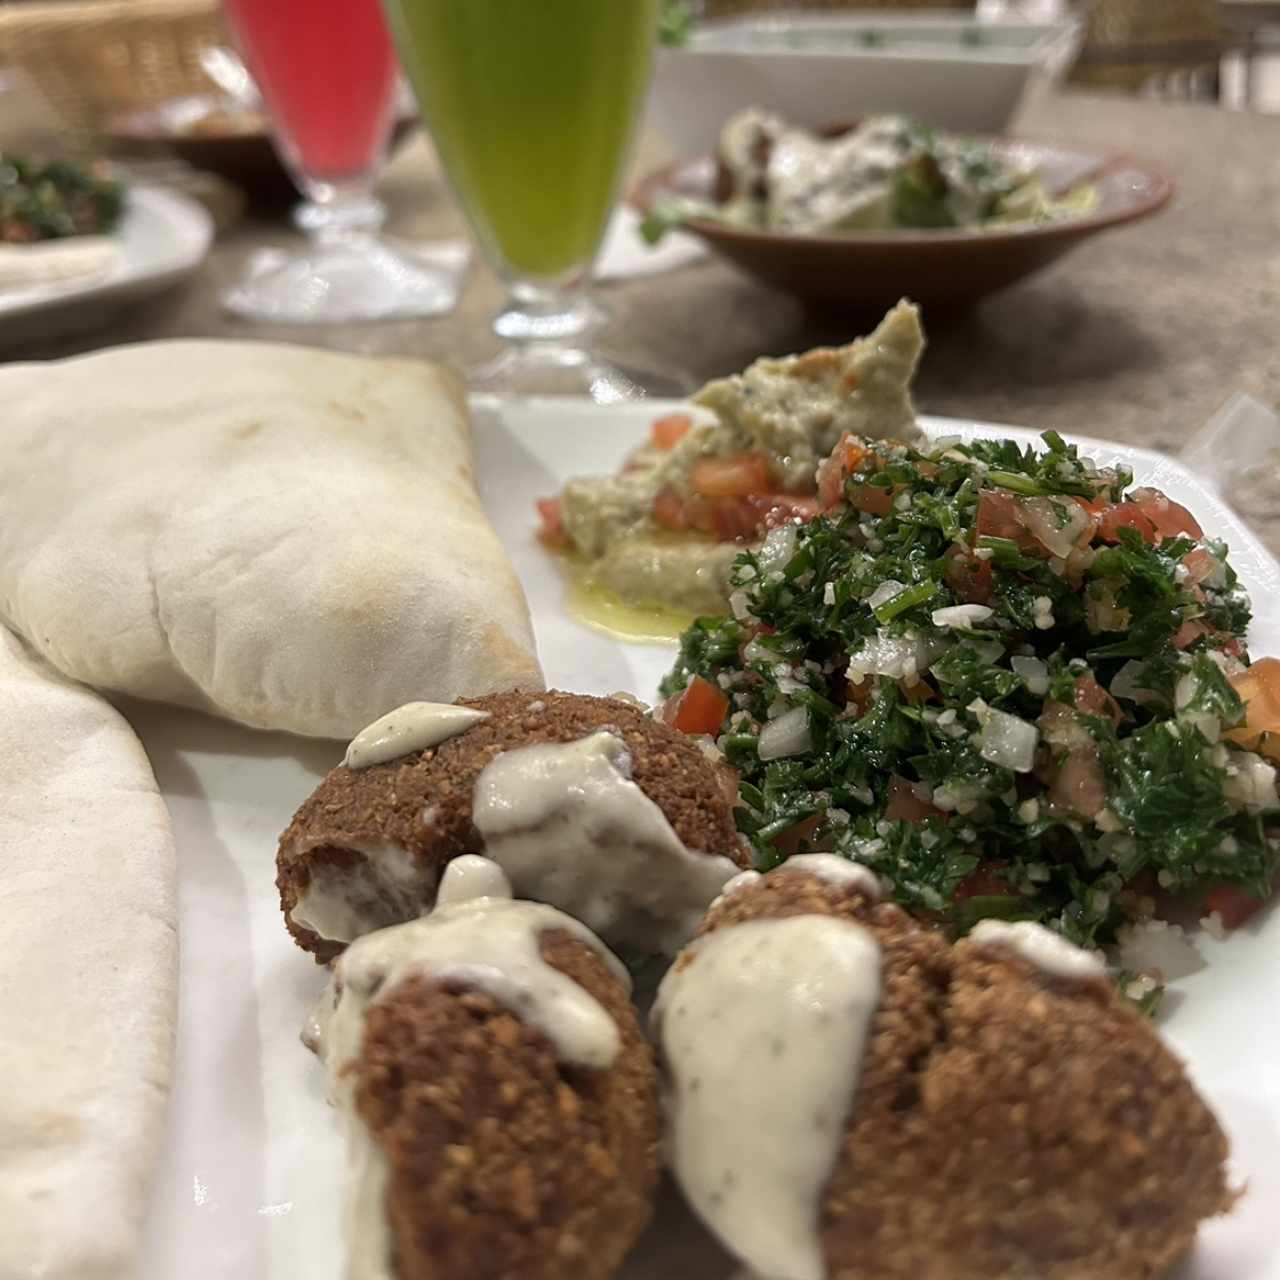 Entradas Libanesas - pan pita, falafel y tabule 